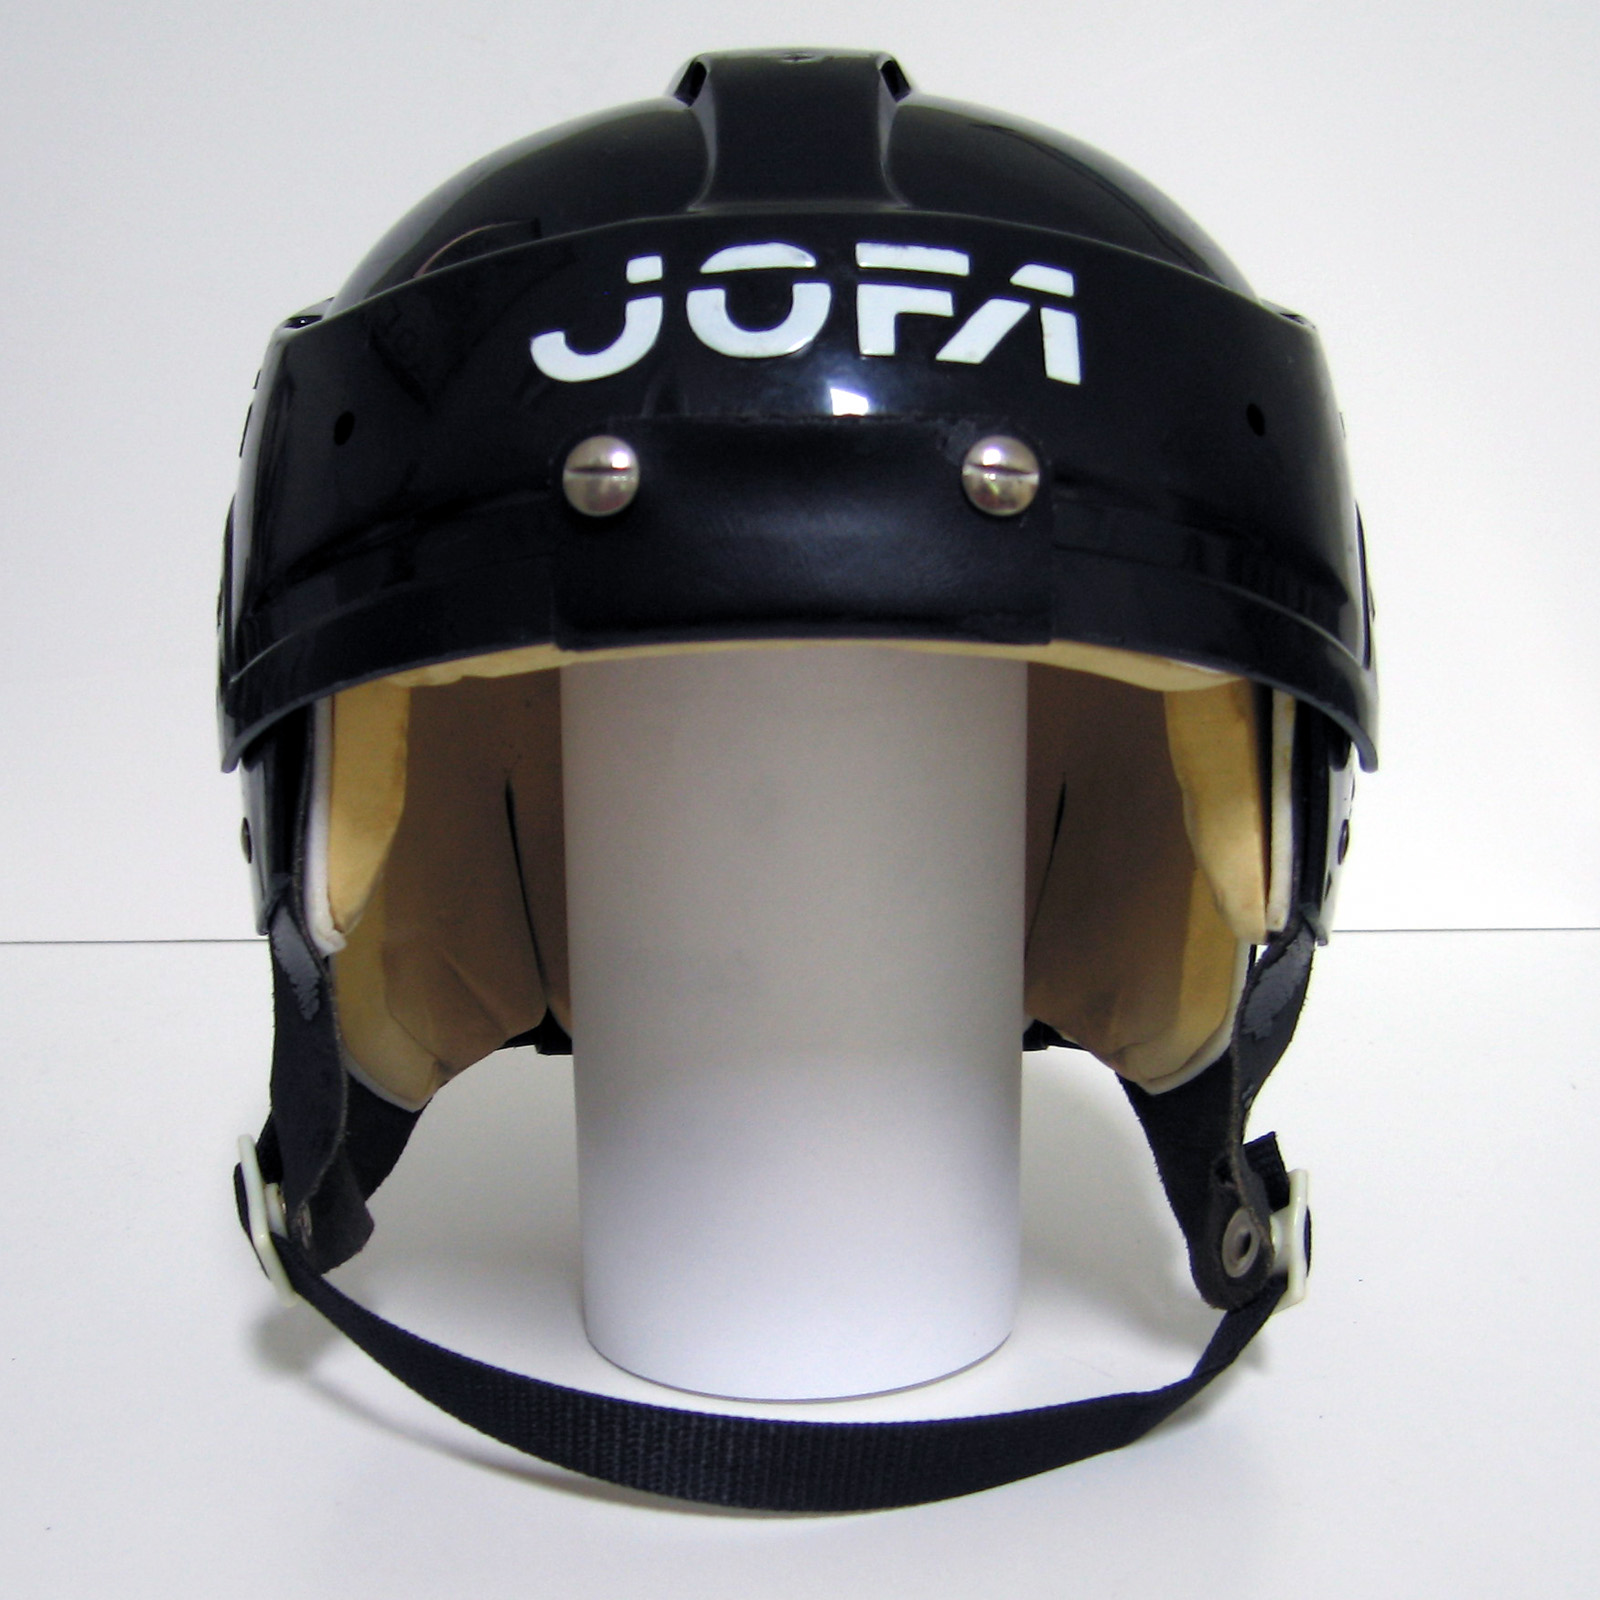 jofa-helmets-halos-of-hockey-the-jofa-366-prototype